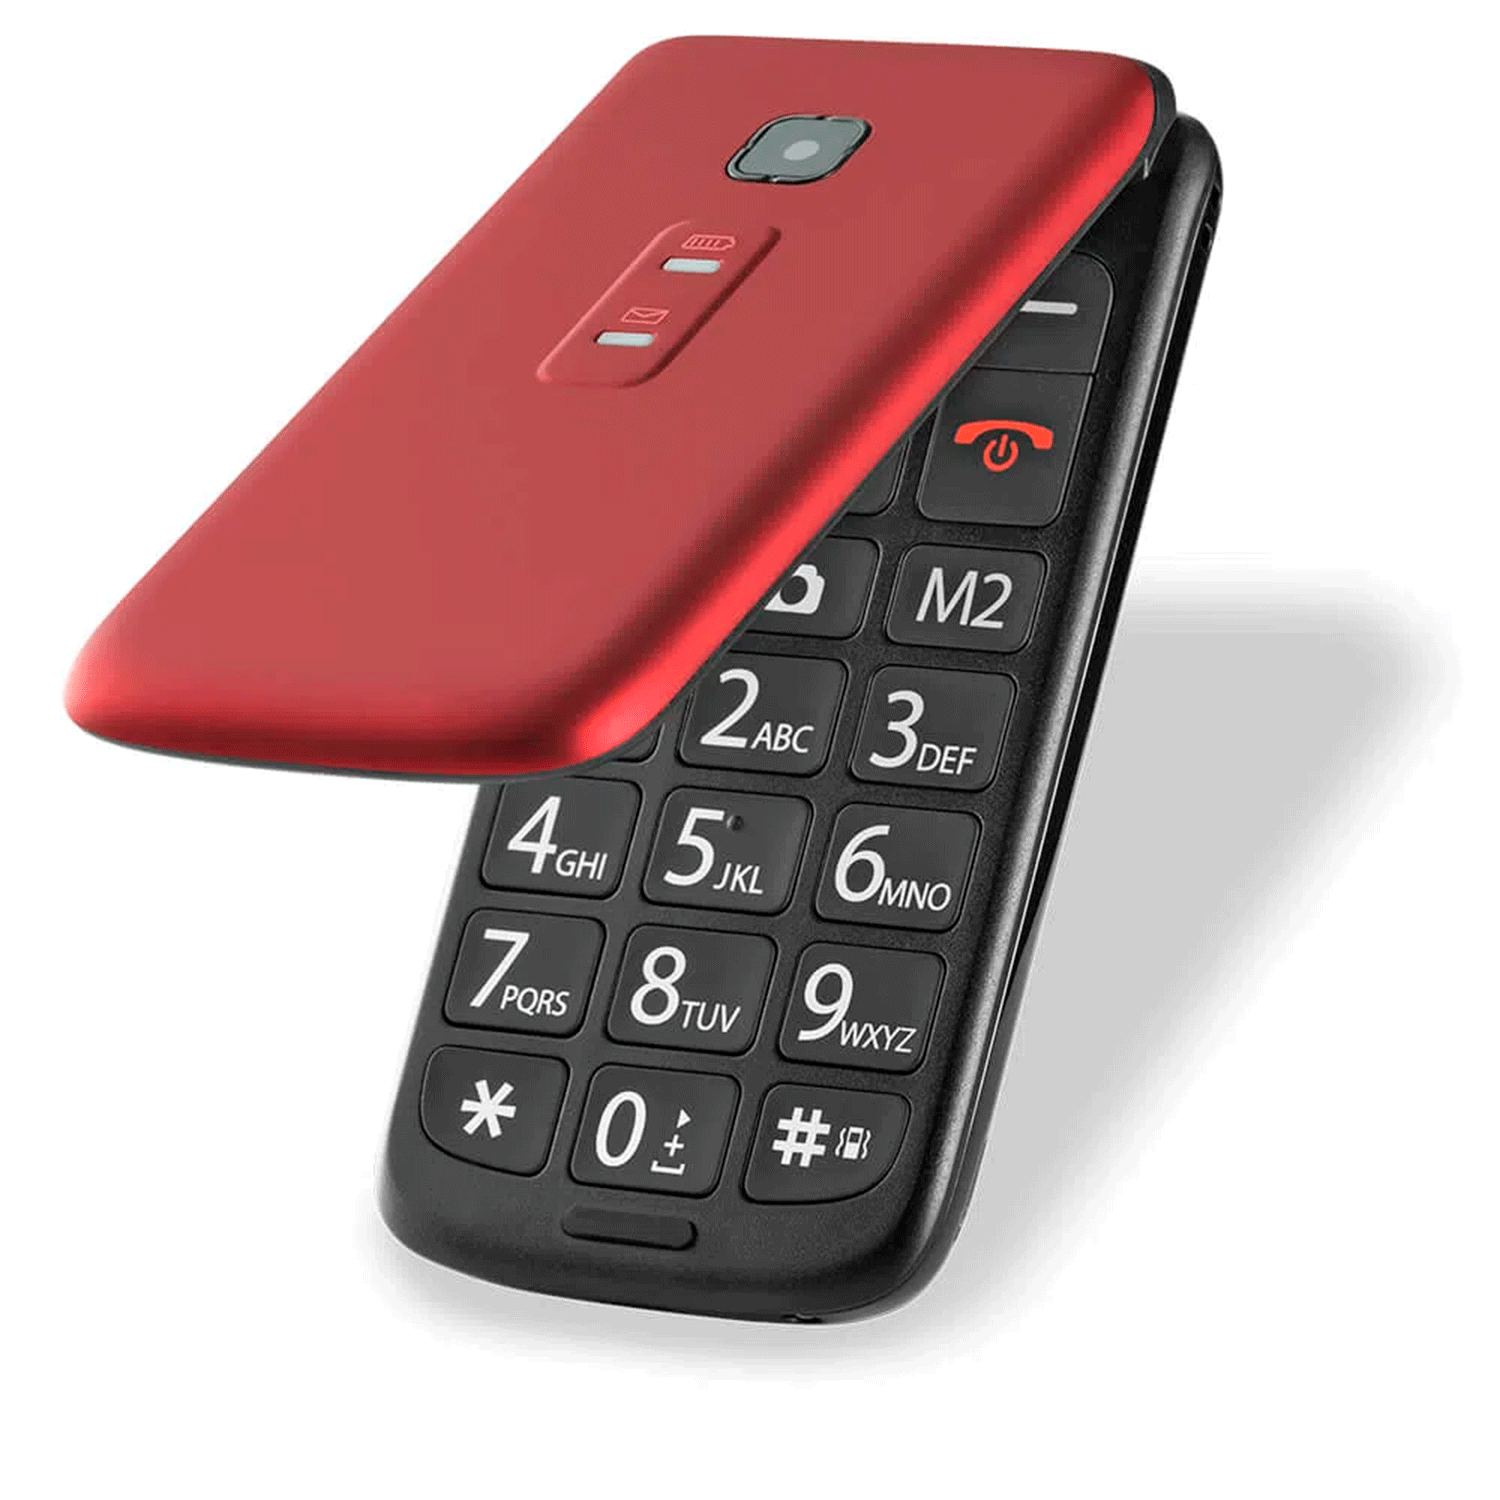 Celular Multilaser Flip Vita P9021 Dual SIM Tela 2.4" - Vermelho (Anatel)